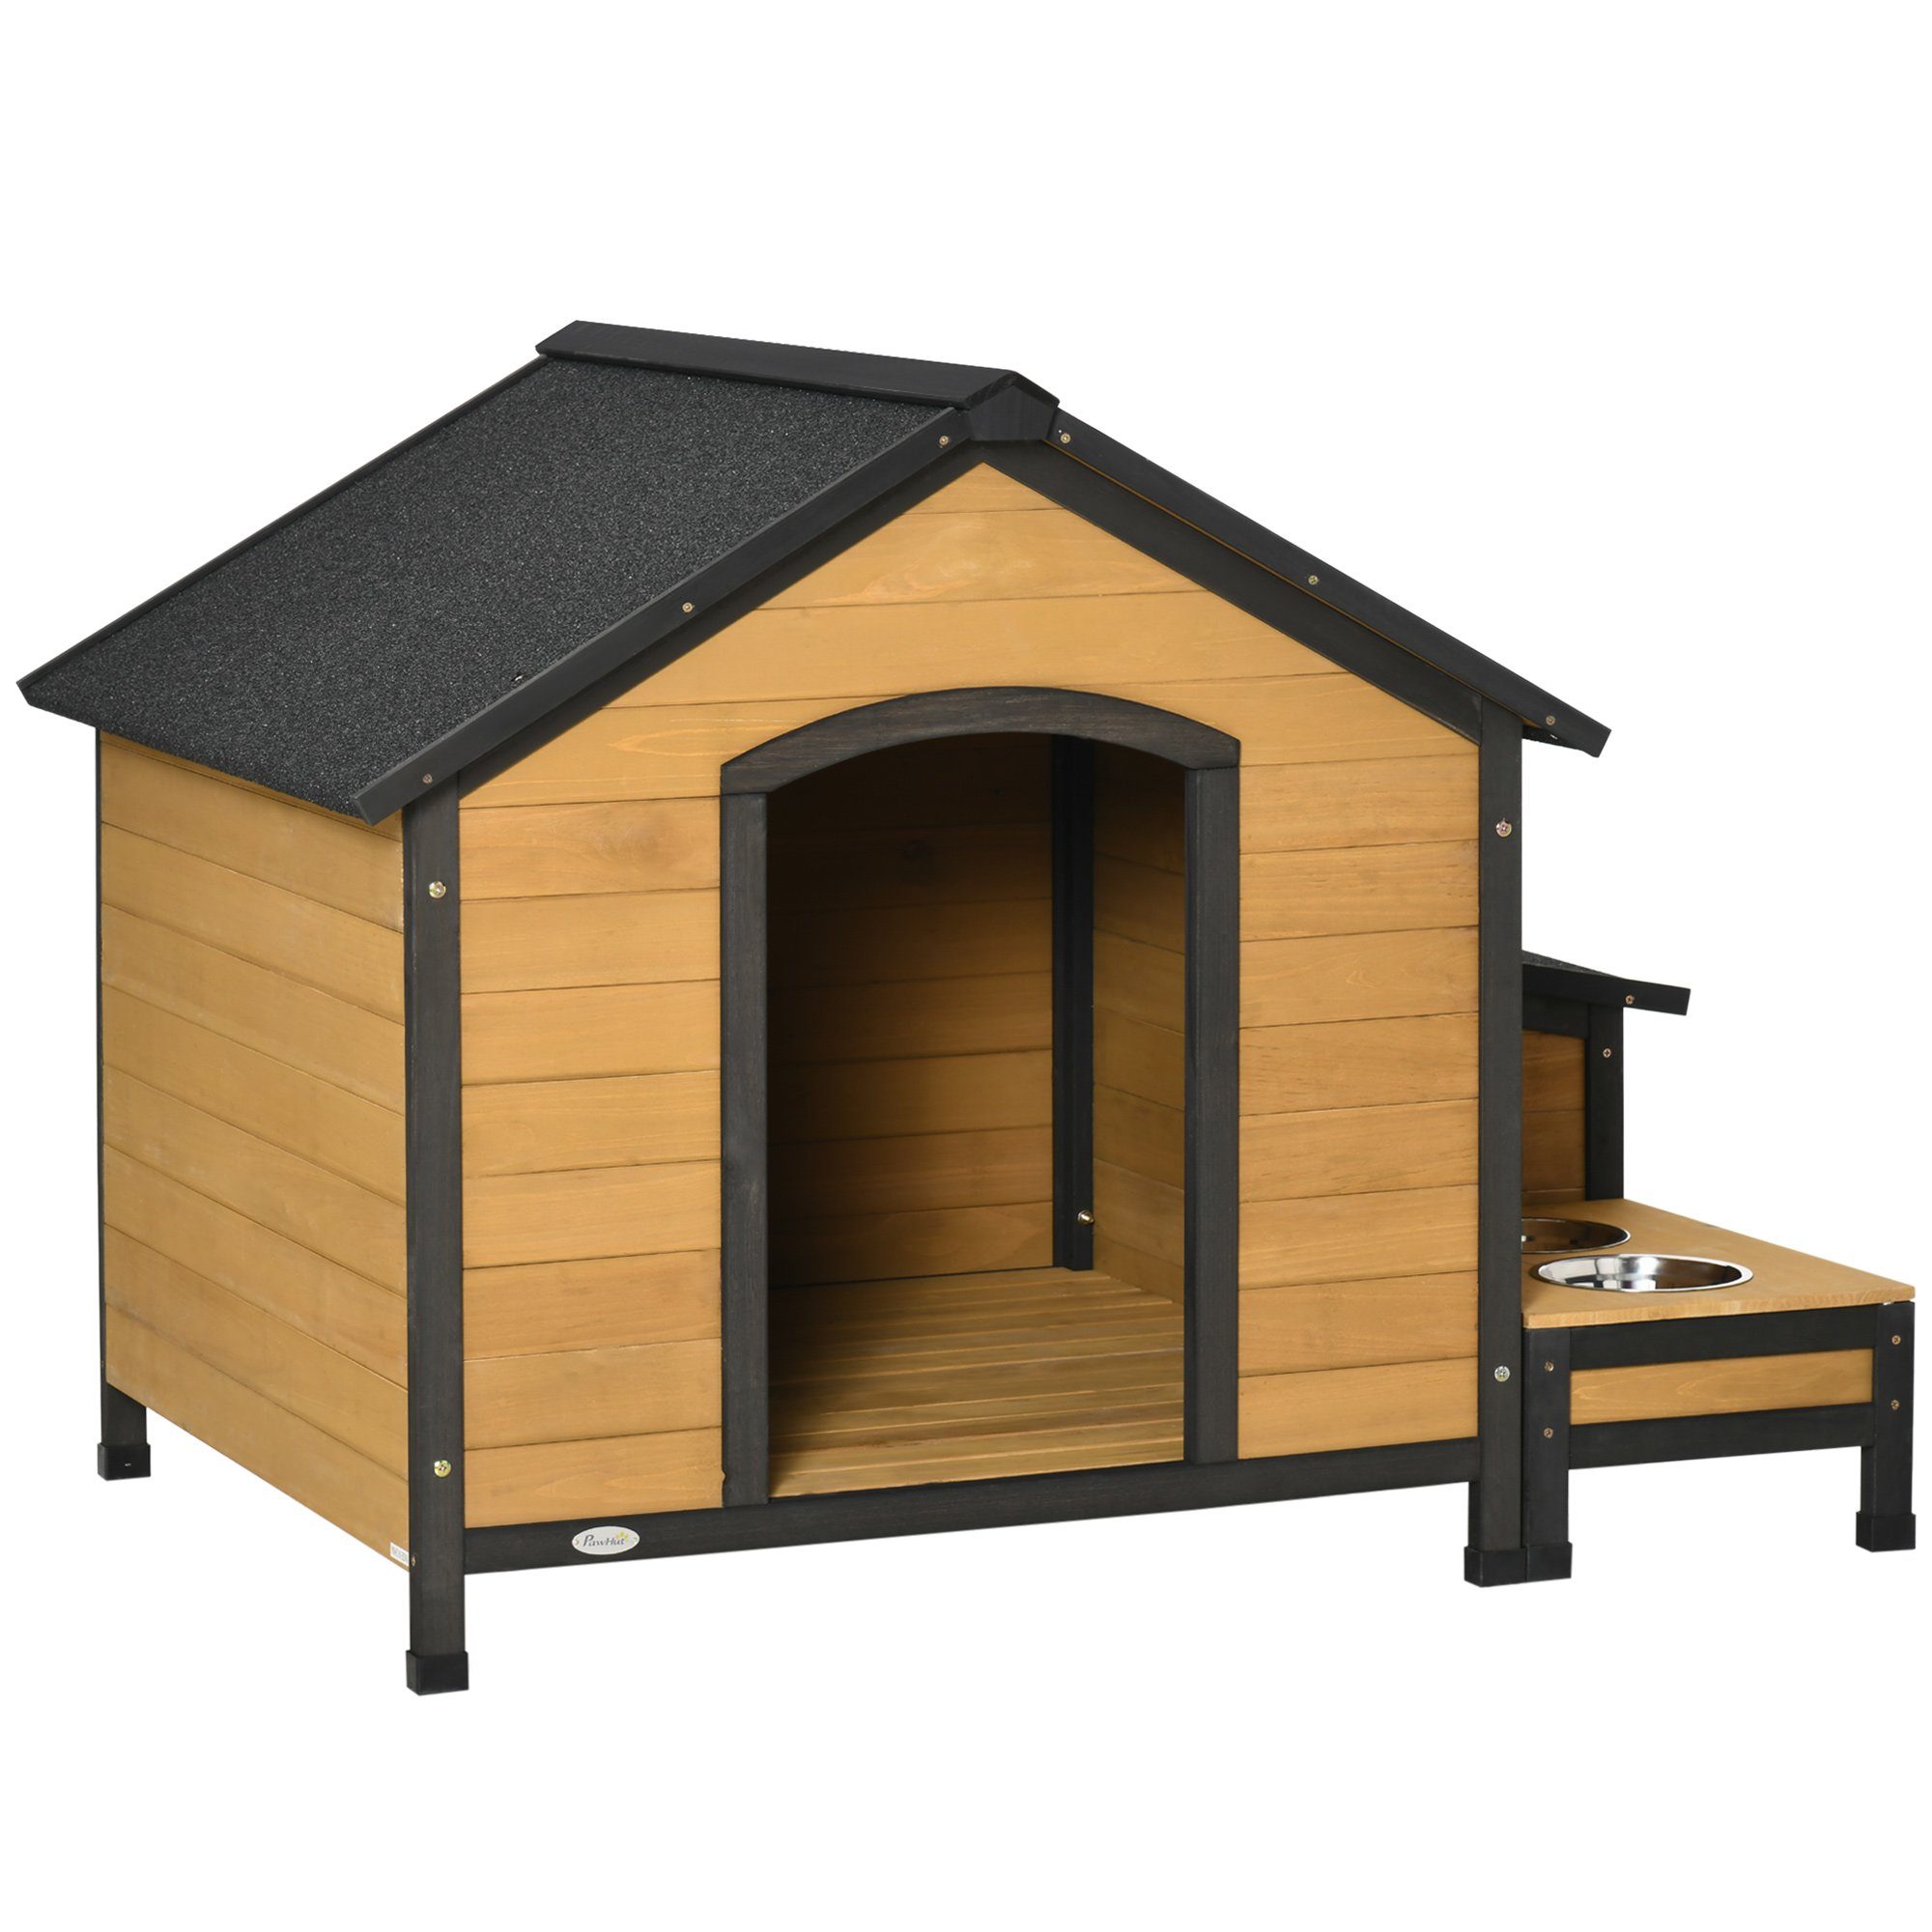 PawHut Hundehütte Kleintierhaus, Hundehaus mit 2 Hundeschüsseln, für Garten, Balkon, Naturholz